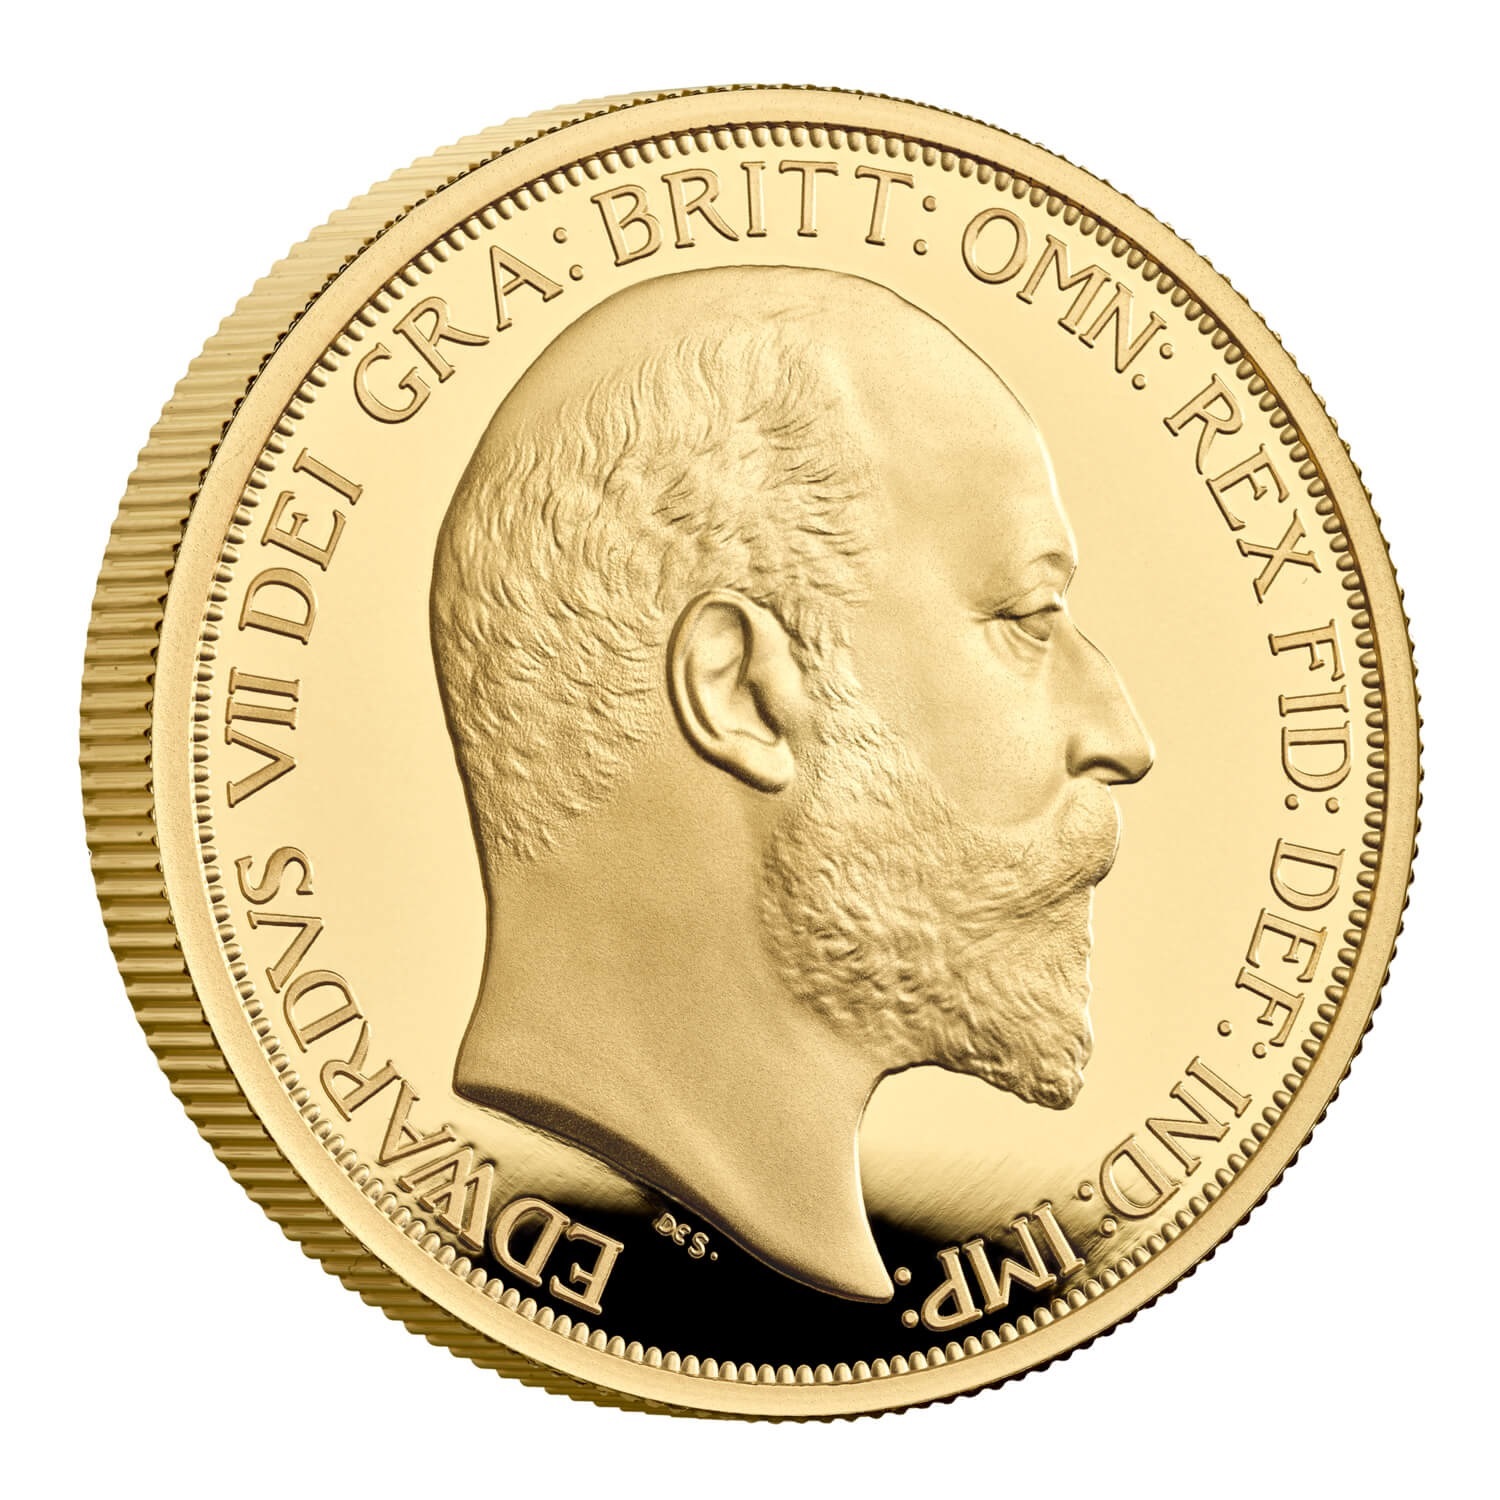 (W185.100.P.2022.UK22E7G1O) 100 Pounds UK 2022 1 oz Proof gold - King Edward VII Reverse (zoom)